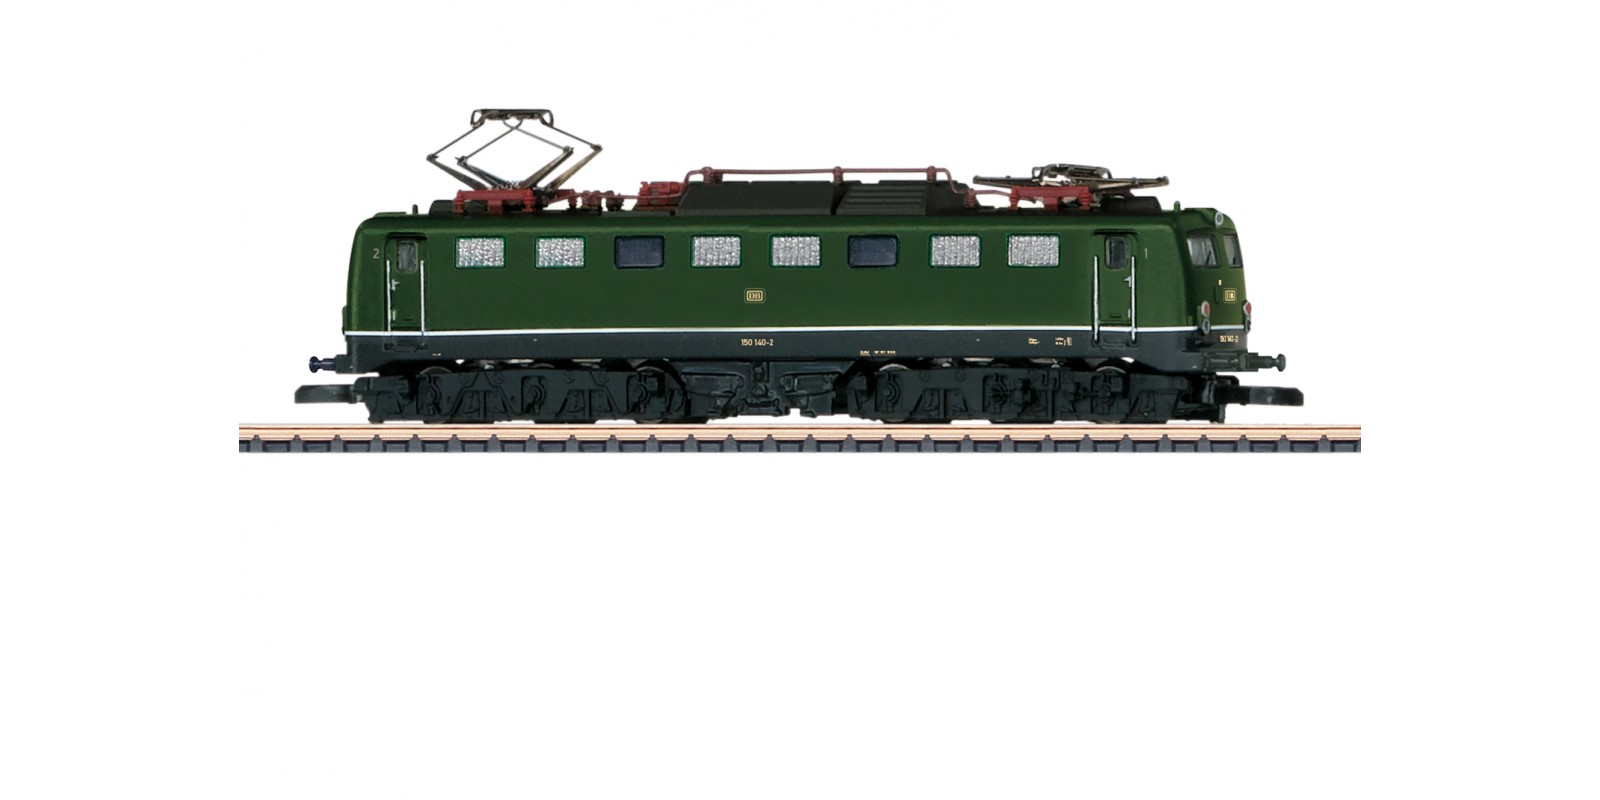 88579 Class 150 Electric Locomotive